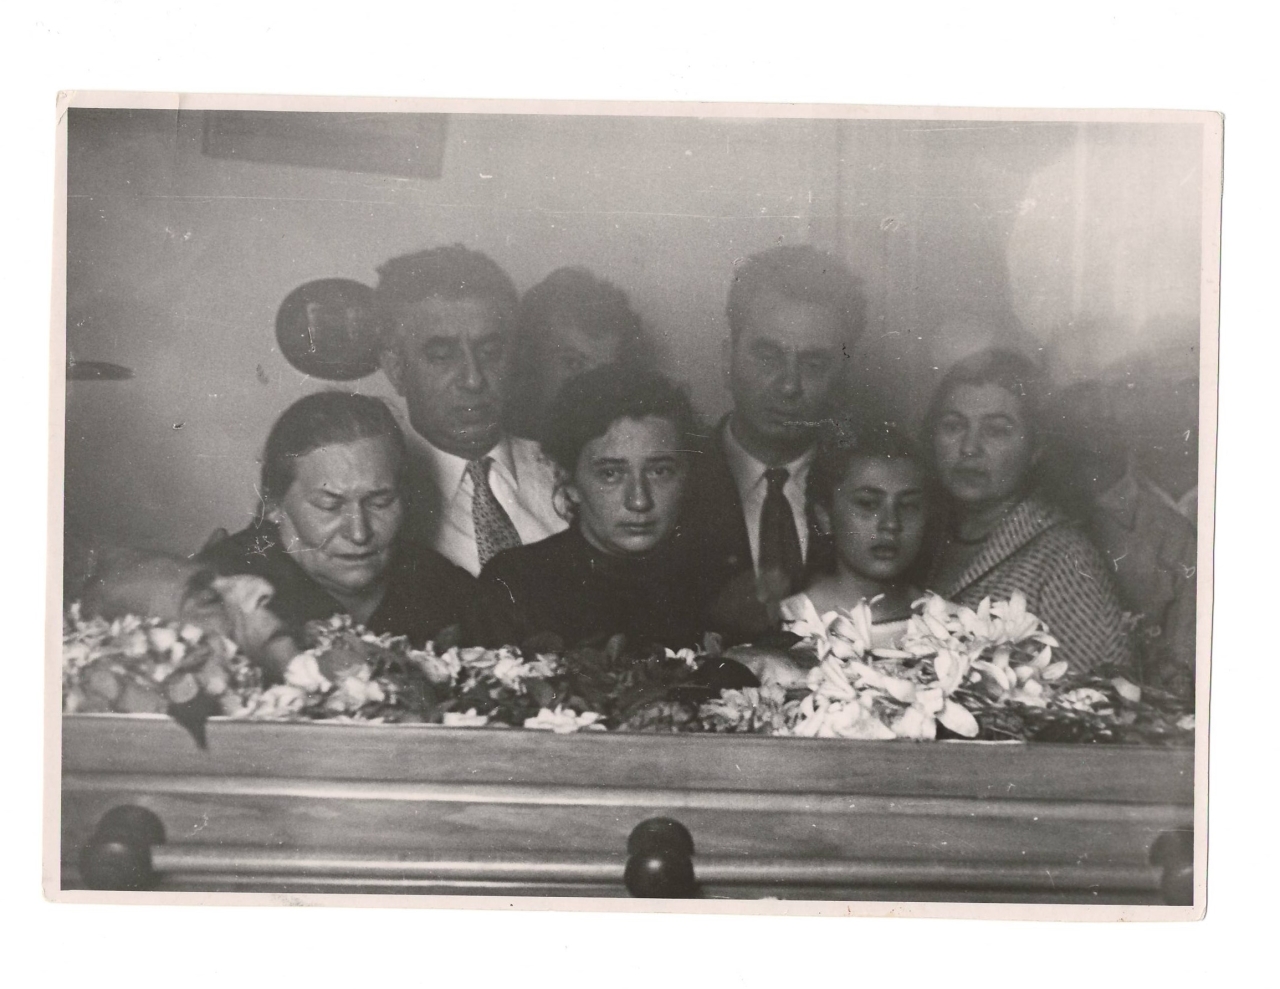 Լուսանկար. Ա.Խաչատրյանը կնոջ ՝ Նինա Մակարովայի և իրենց ազգականների հետ իր եղբայր Վաղինակի հոգեհանգստին ՝ իր երևանյան տանը 